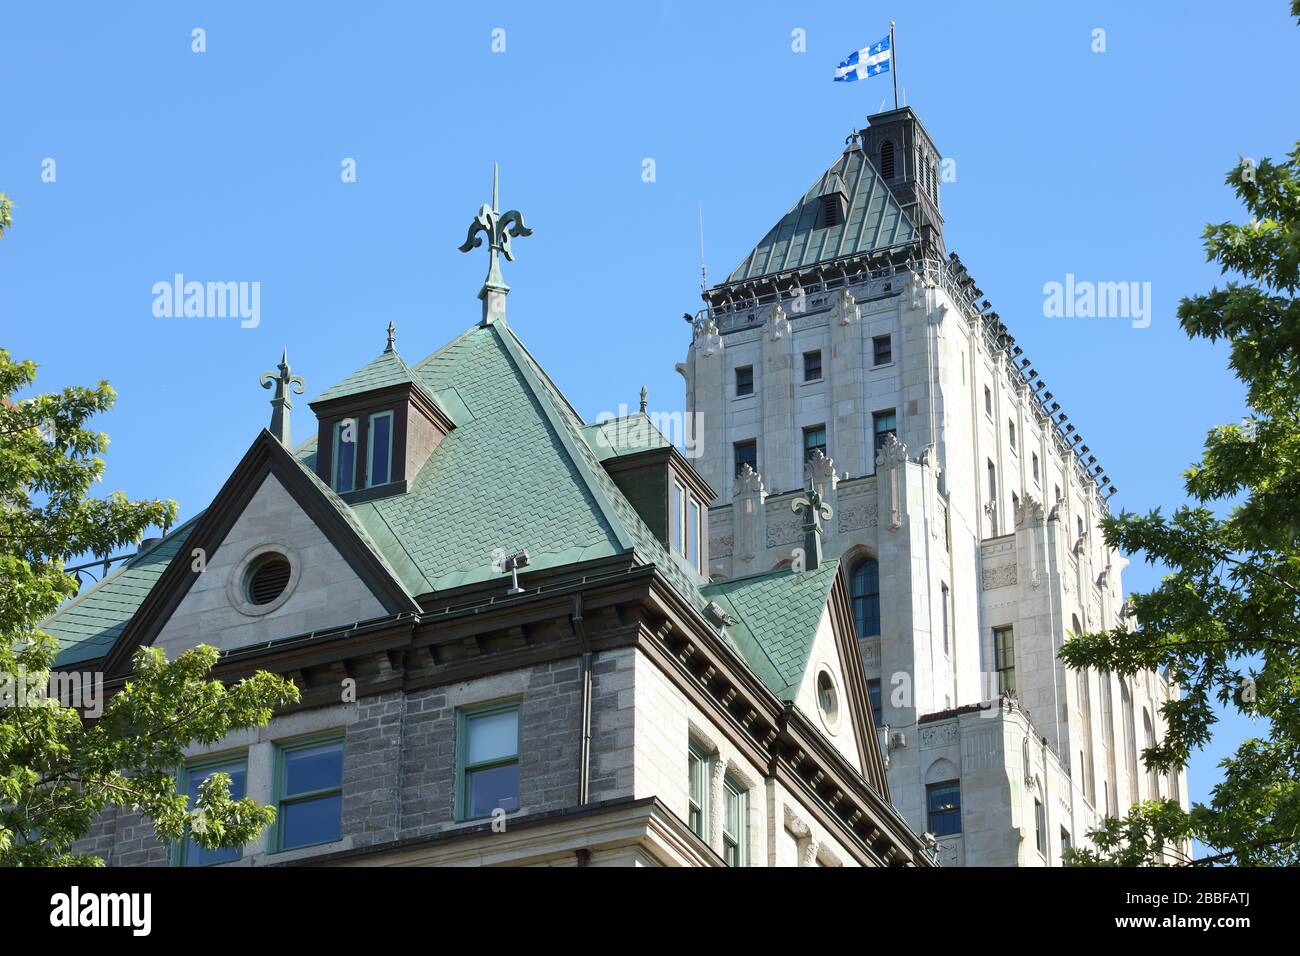 Dettagli architettonici di due tetti: Art Deco-stile Price Building sullo sfondo e il secondo stile Impero del Quebec City Hall in primo piano, Upper Town, Old Quebec City, Provincia di Quebec, Canada Foto Stock